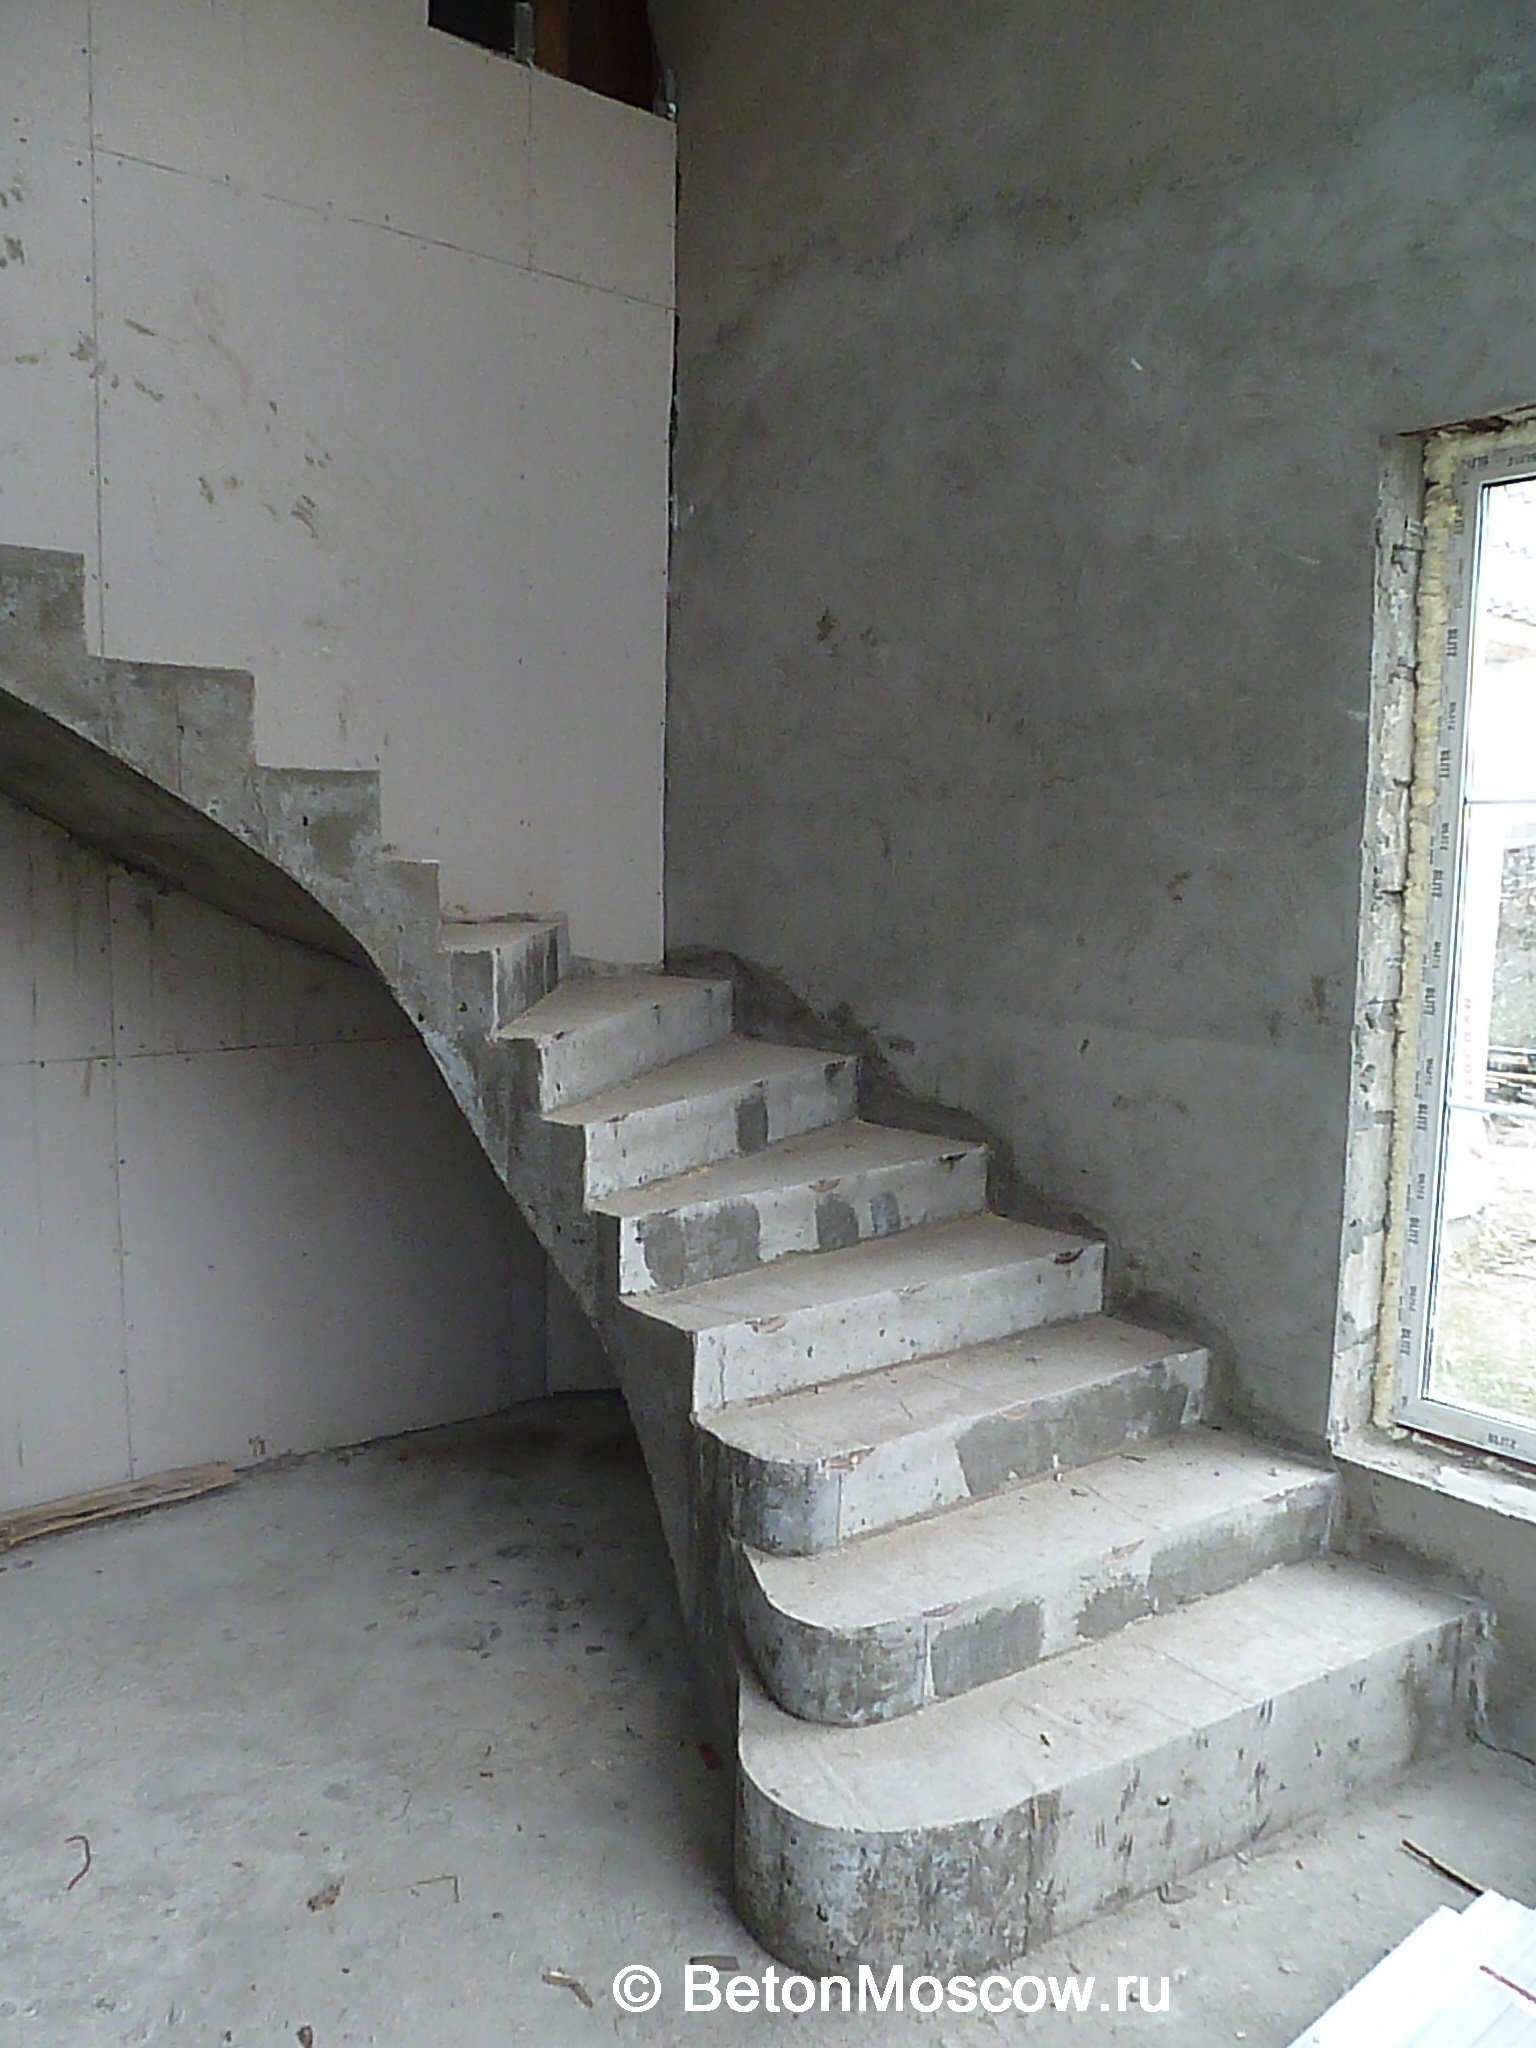 Бетонная лестница второй. Бетонная лестница на второй этаж с забежными ступенями. Бетонная монолитная лестница с забежными ступенями. Лестница монолитная железобетонная на второй этаж. Монолитные лестницы из бетона в частном доме на 2 этаж.